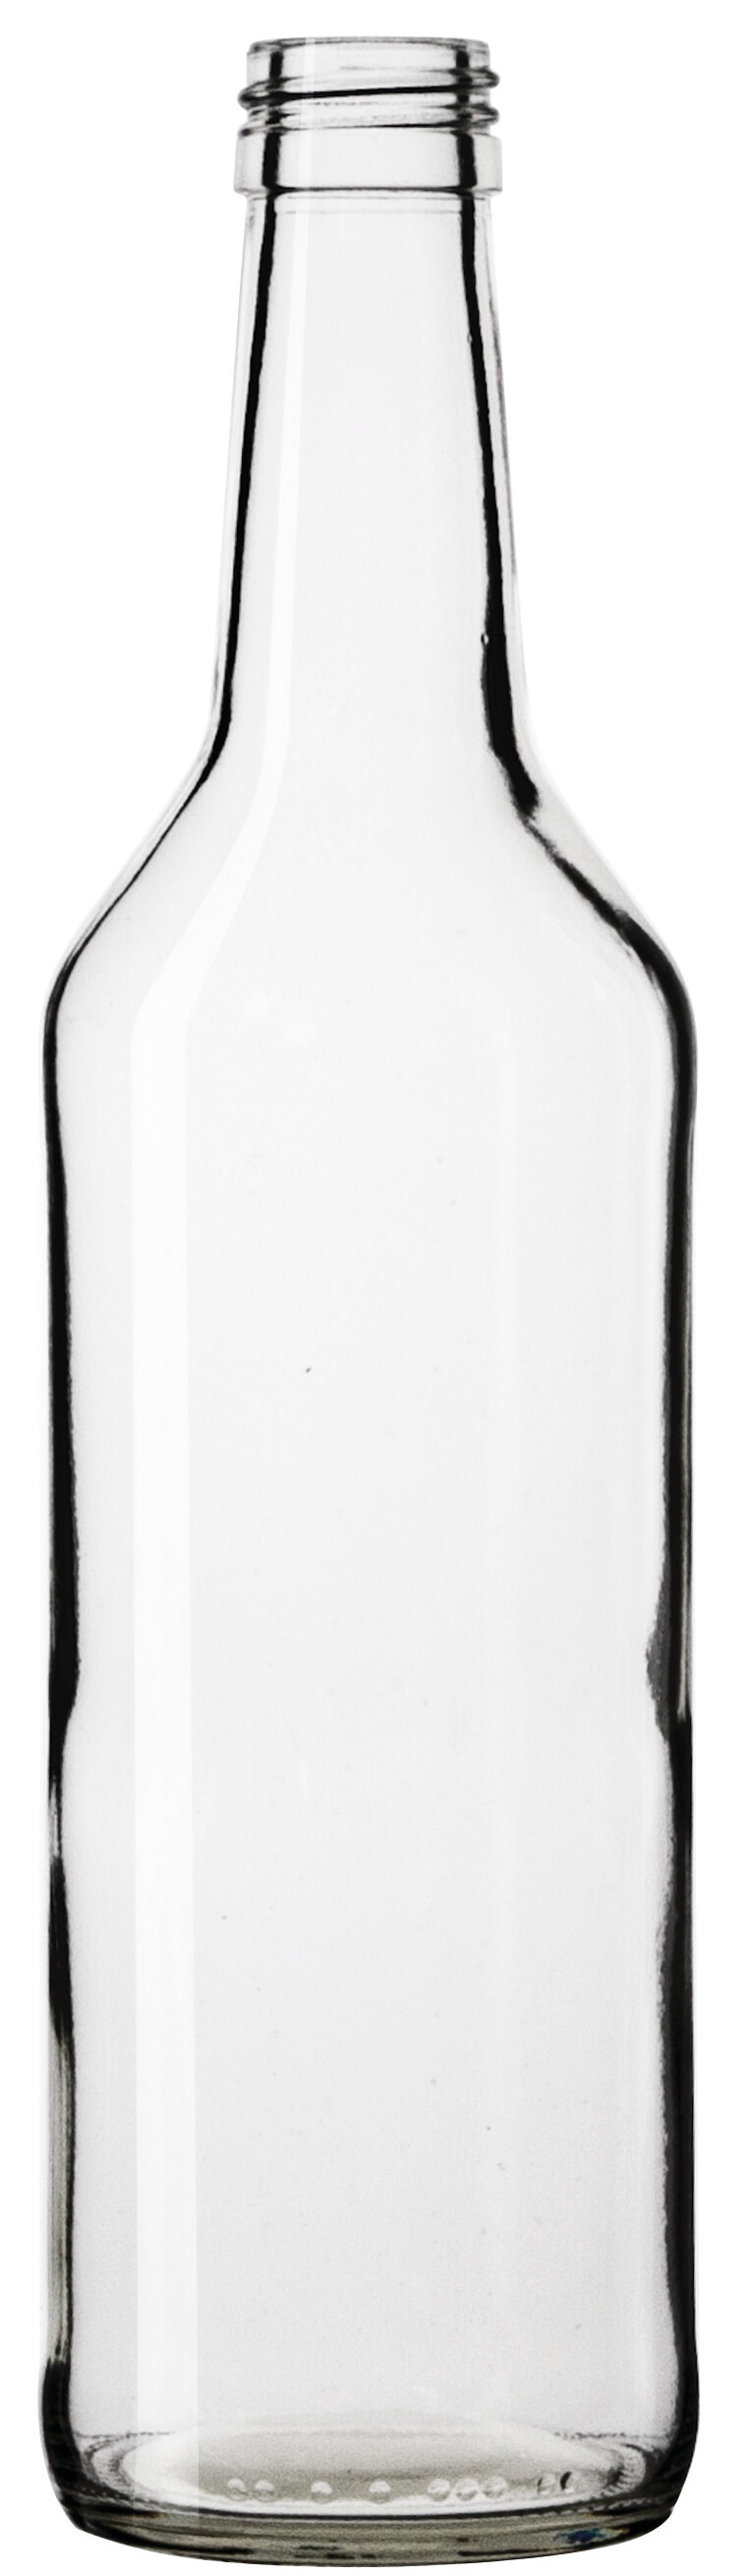 Glass bottle, clear - 500ml